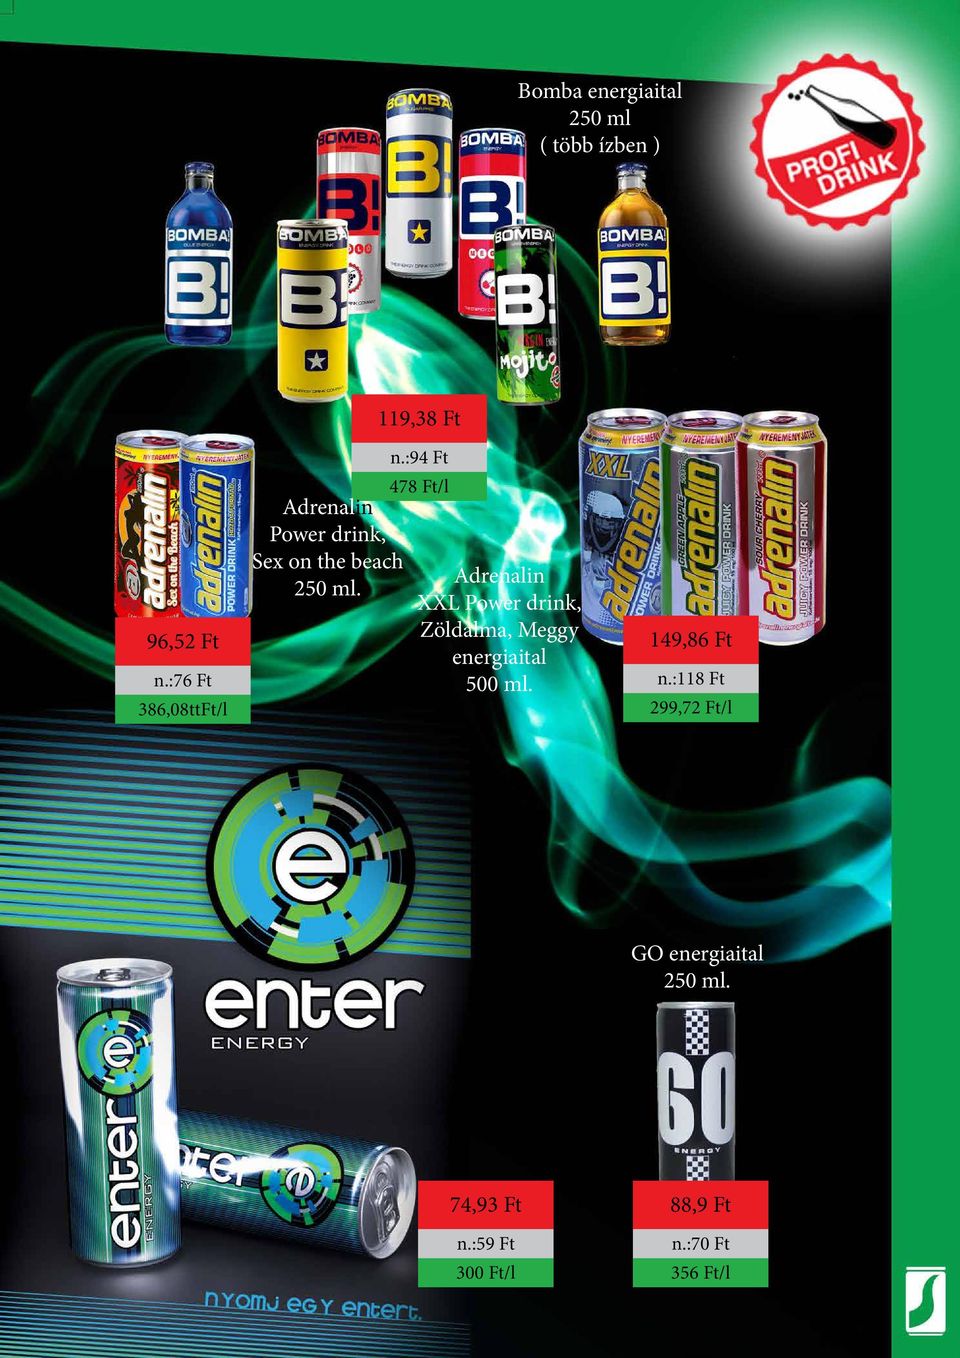 :94 Ft 478 Ft/l Adrenalin XXL Power drink, Zöldalma, Meggy energiaital 500 ml.